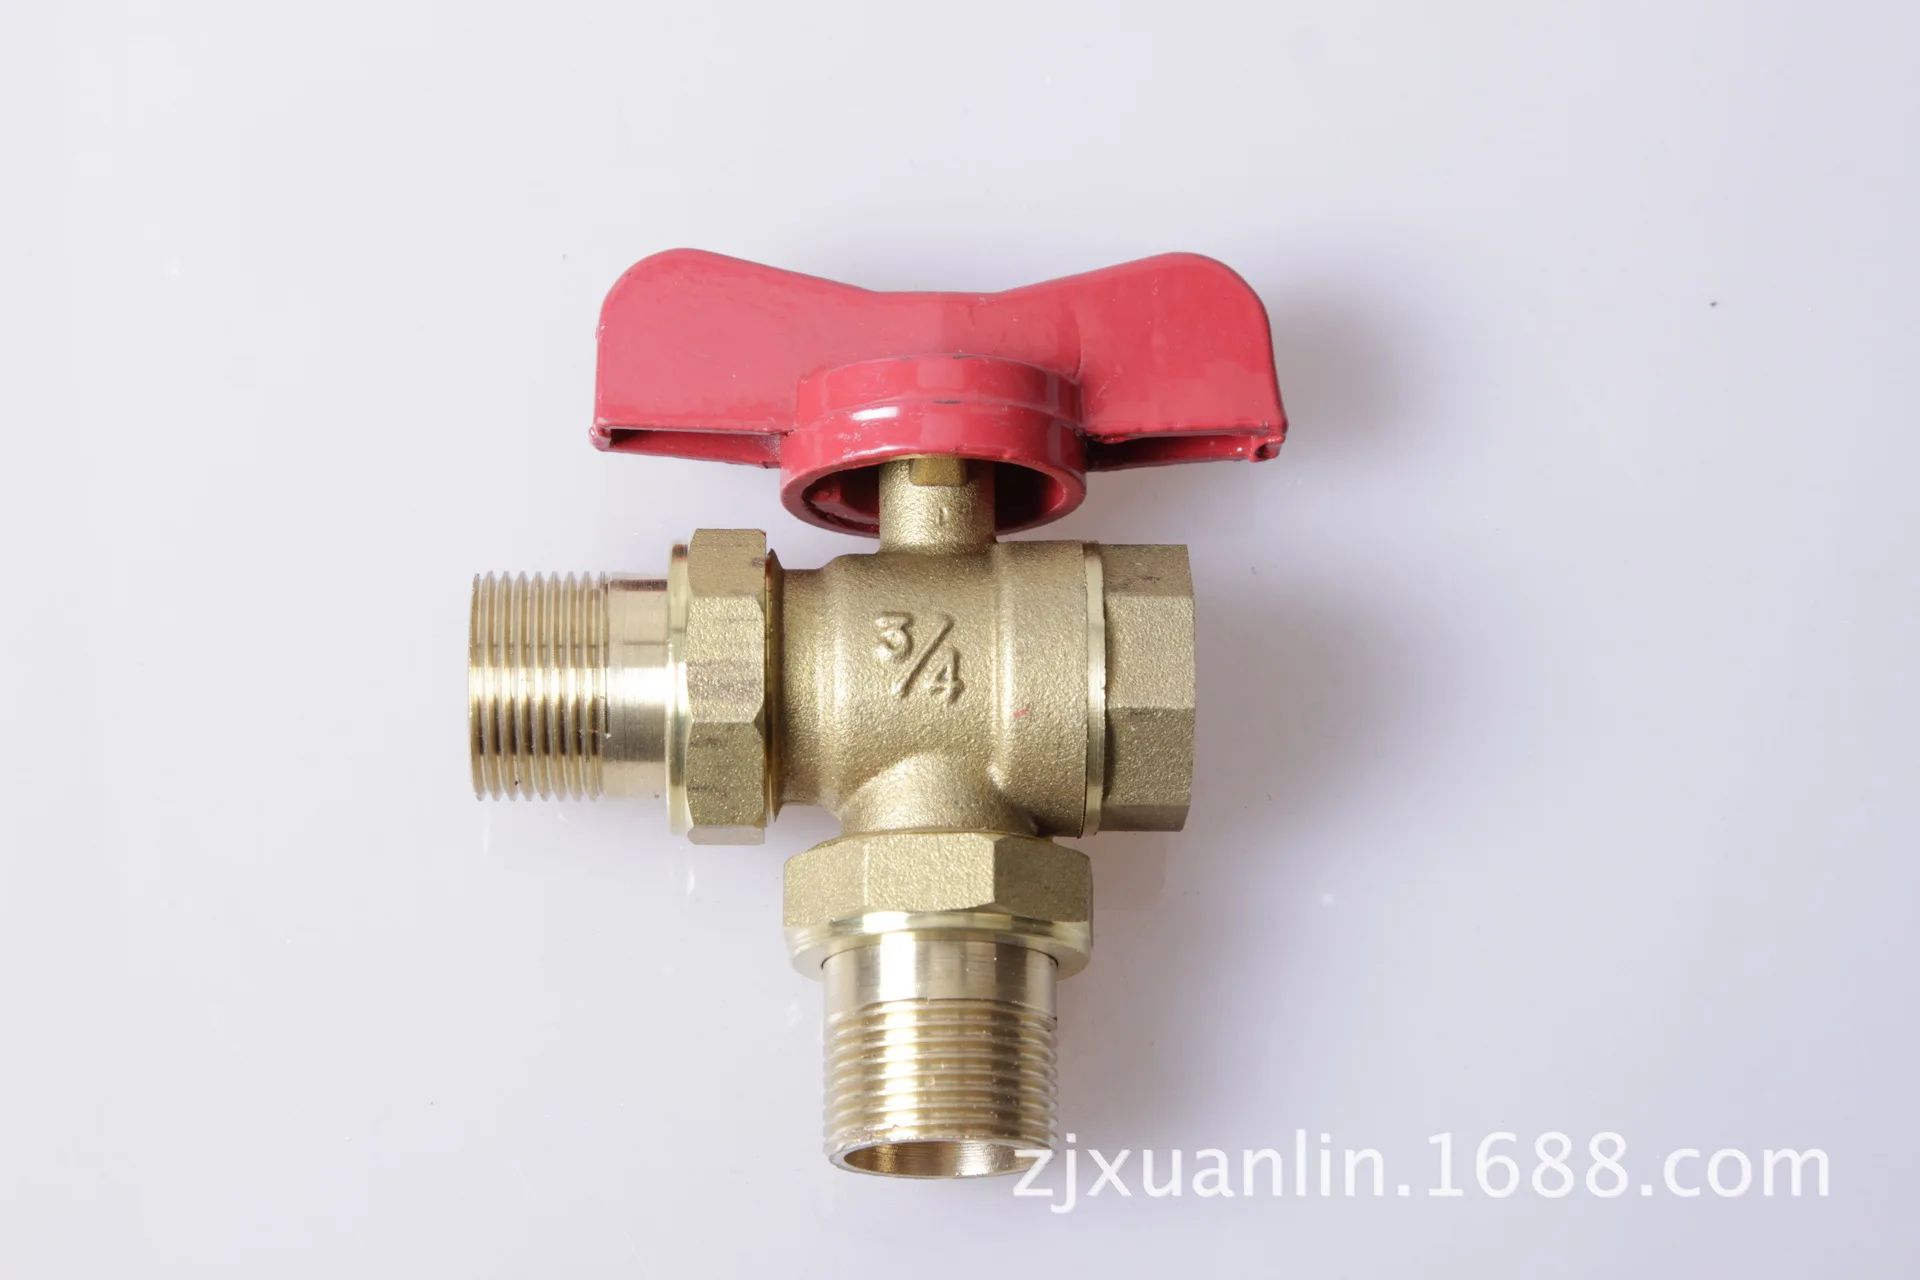 Yuhuan производители поставить все-медь клапан управления три-способ отопления клапан медь клапан гарантия качества